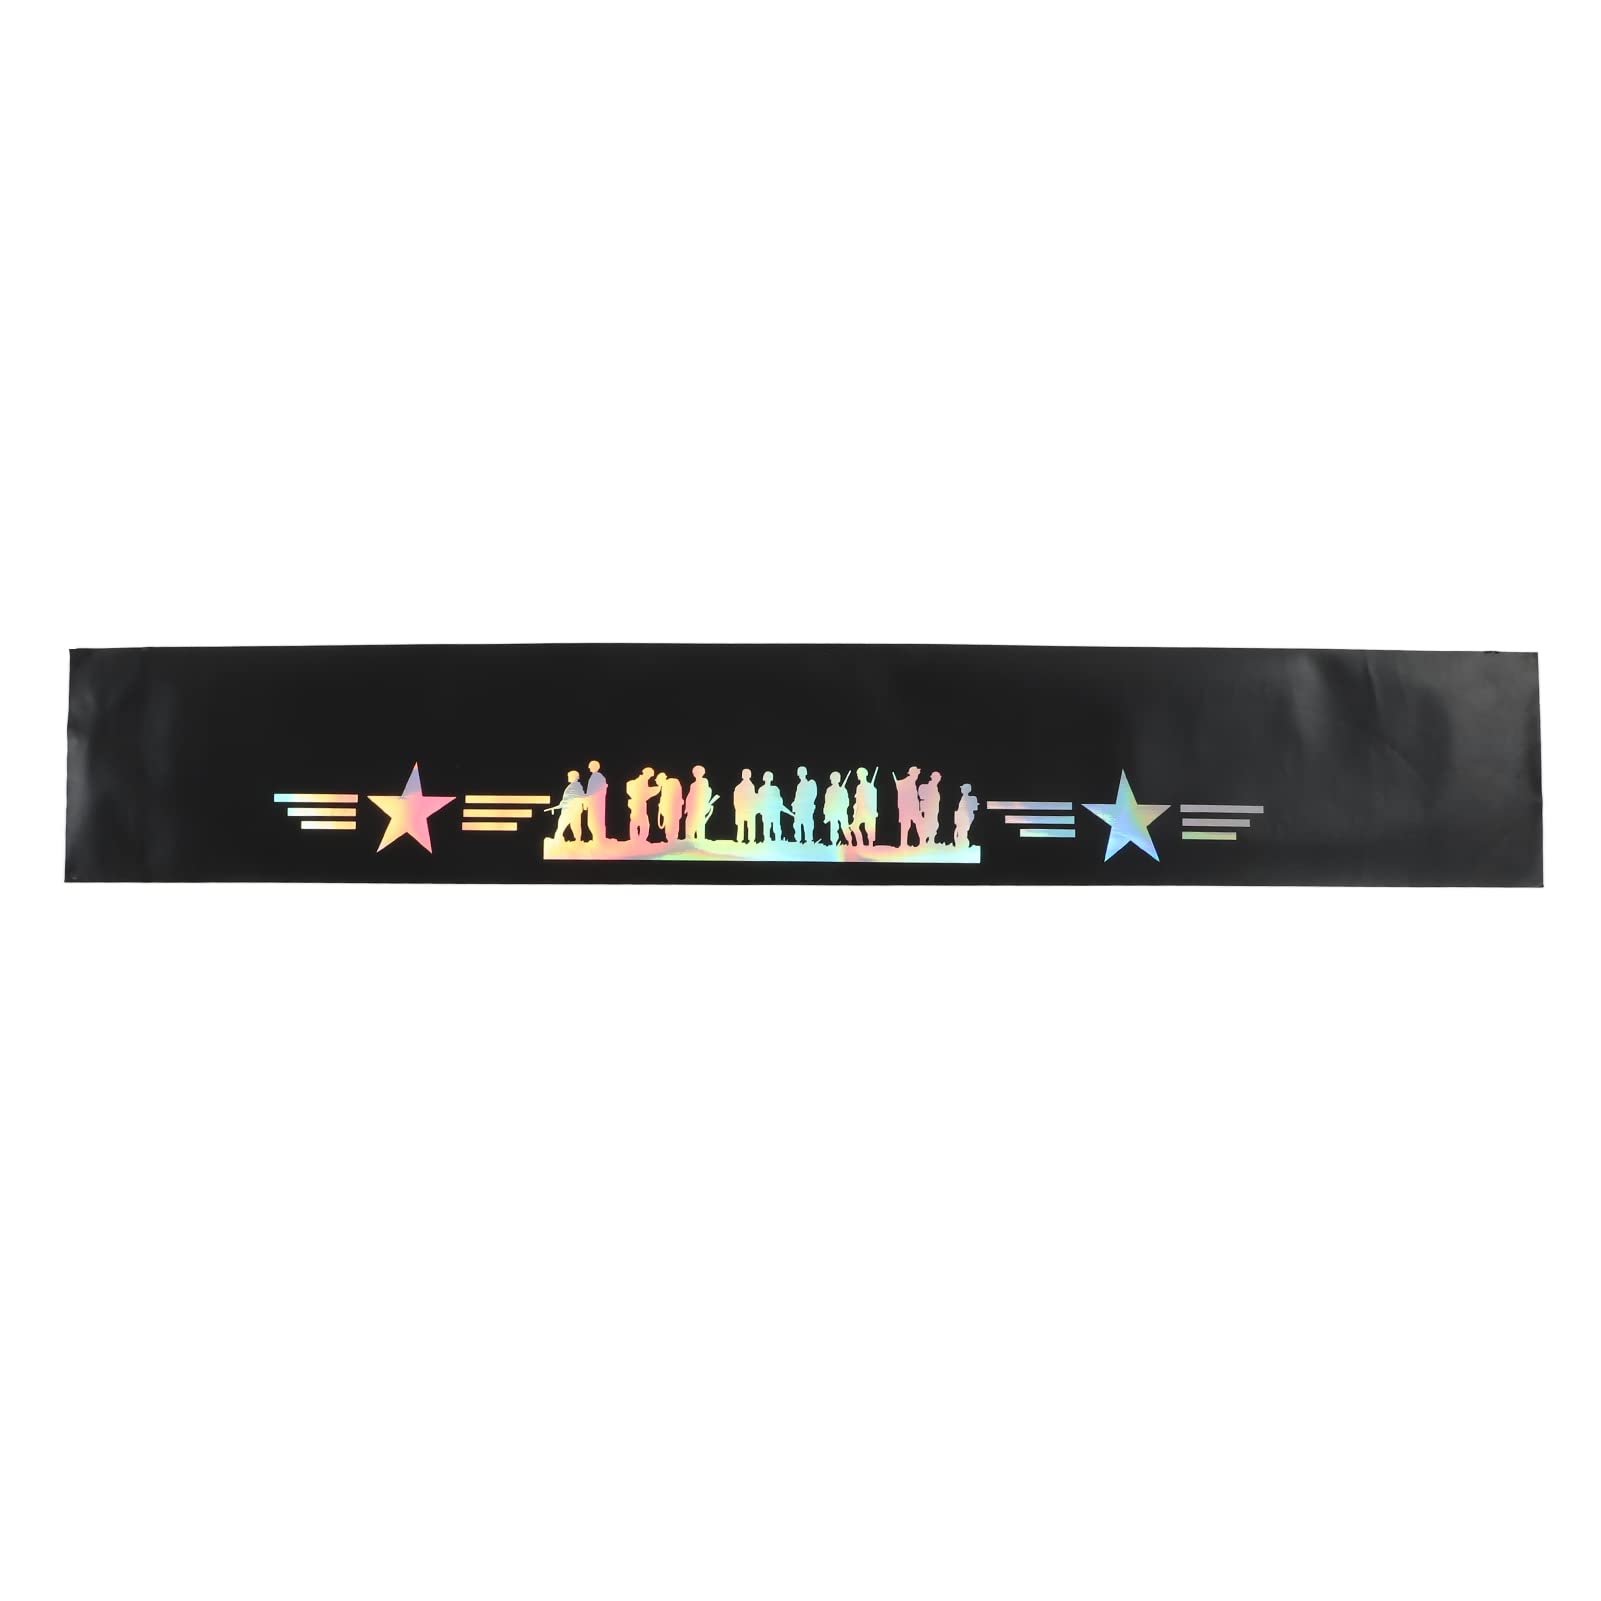 Klanata Universeller reflektierender Aufkleber für die Windschutzscheibe, 130 x 21 cm (51,2 x 8,3 Zoll), Rennmotor-Themenaufkleber für die Automobildekoration (Pentalobe) von Klanata